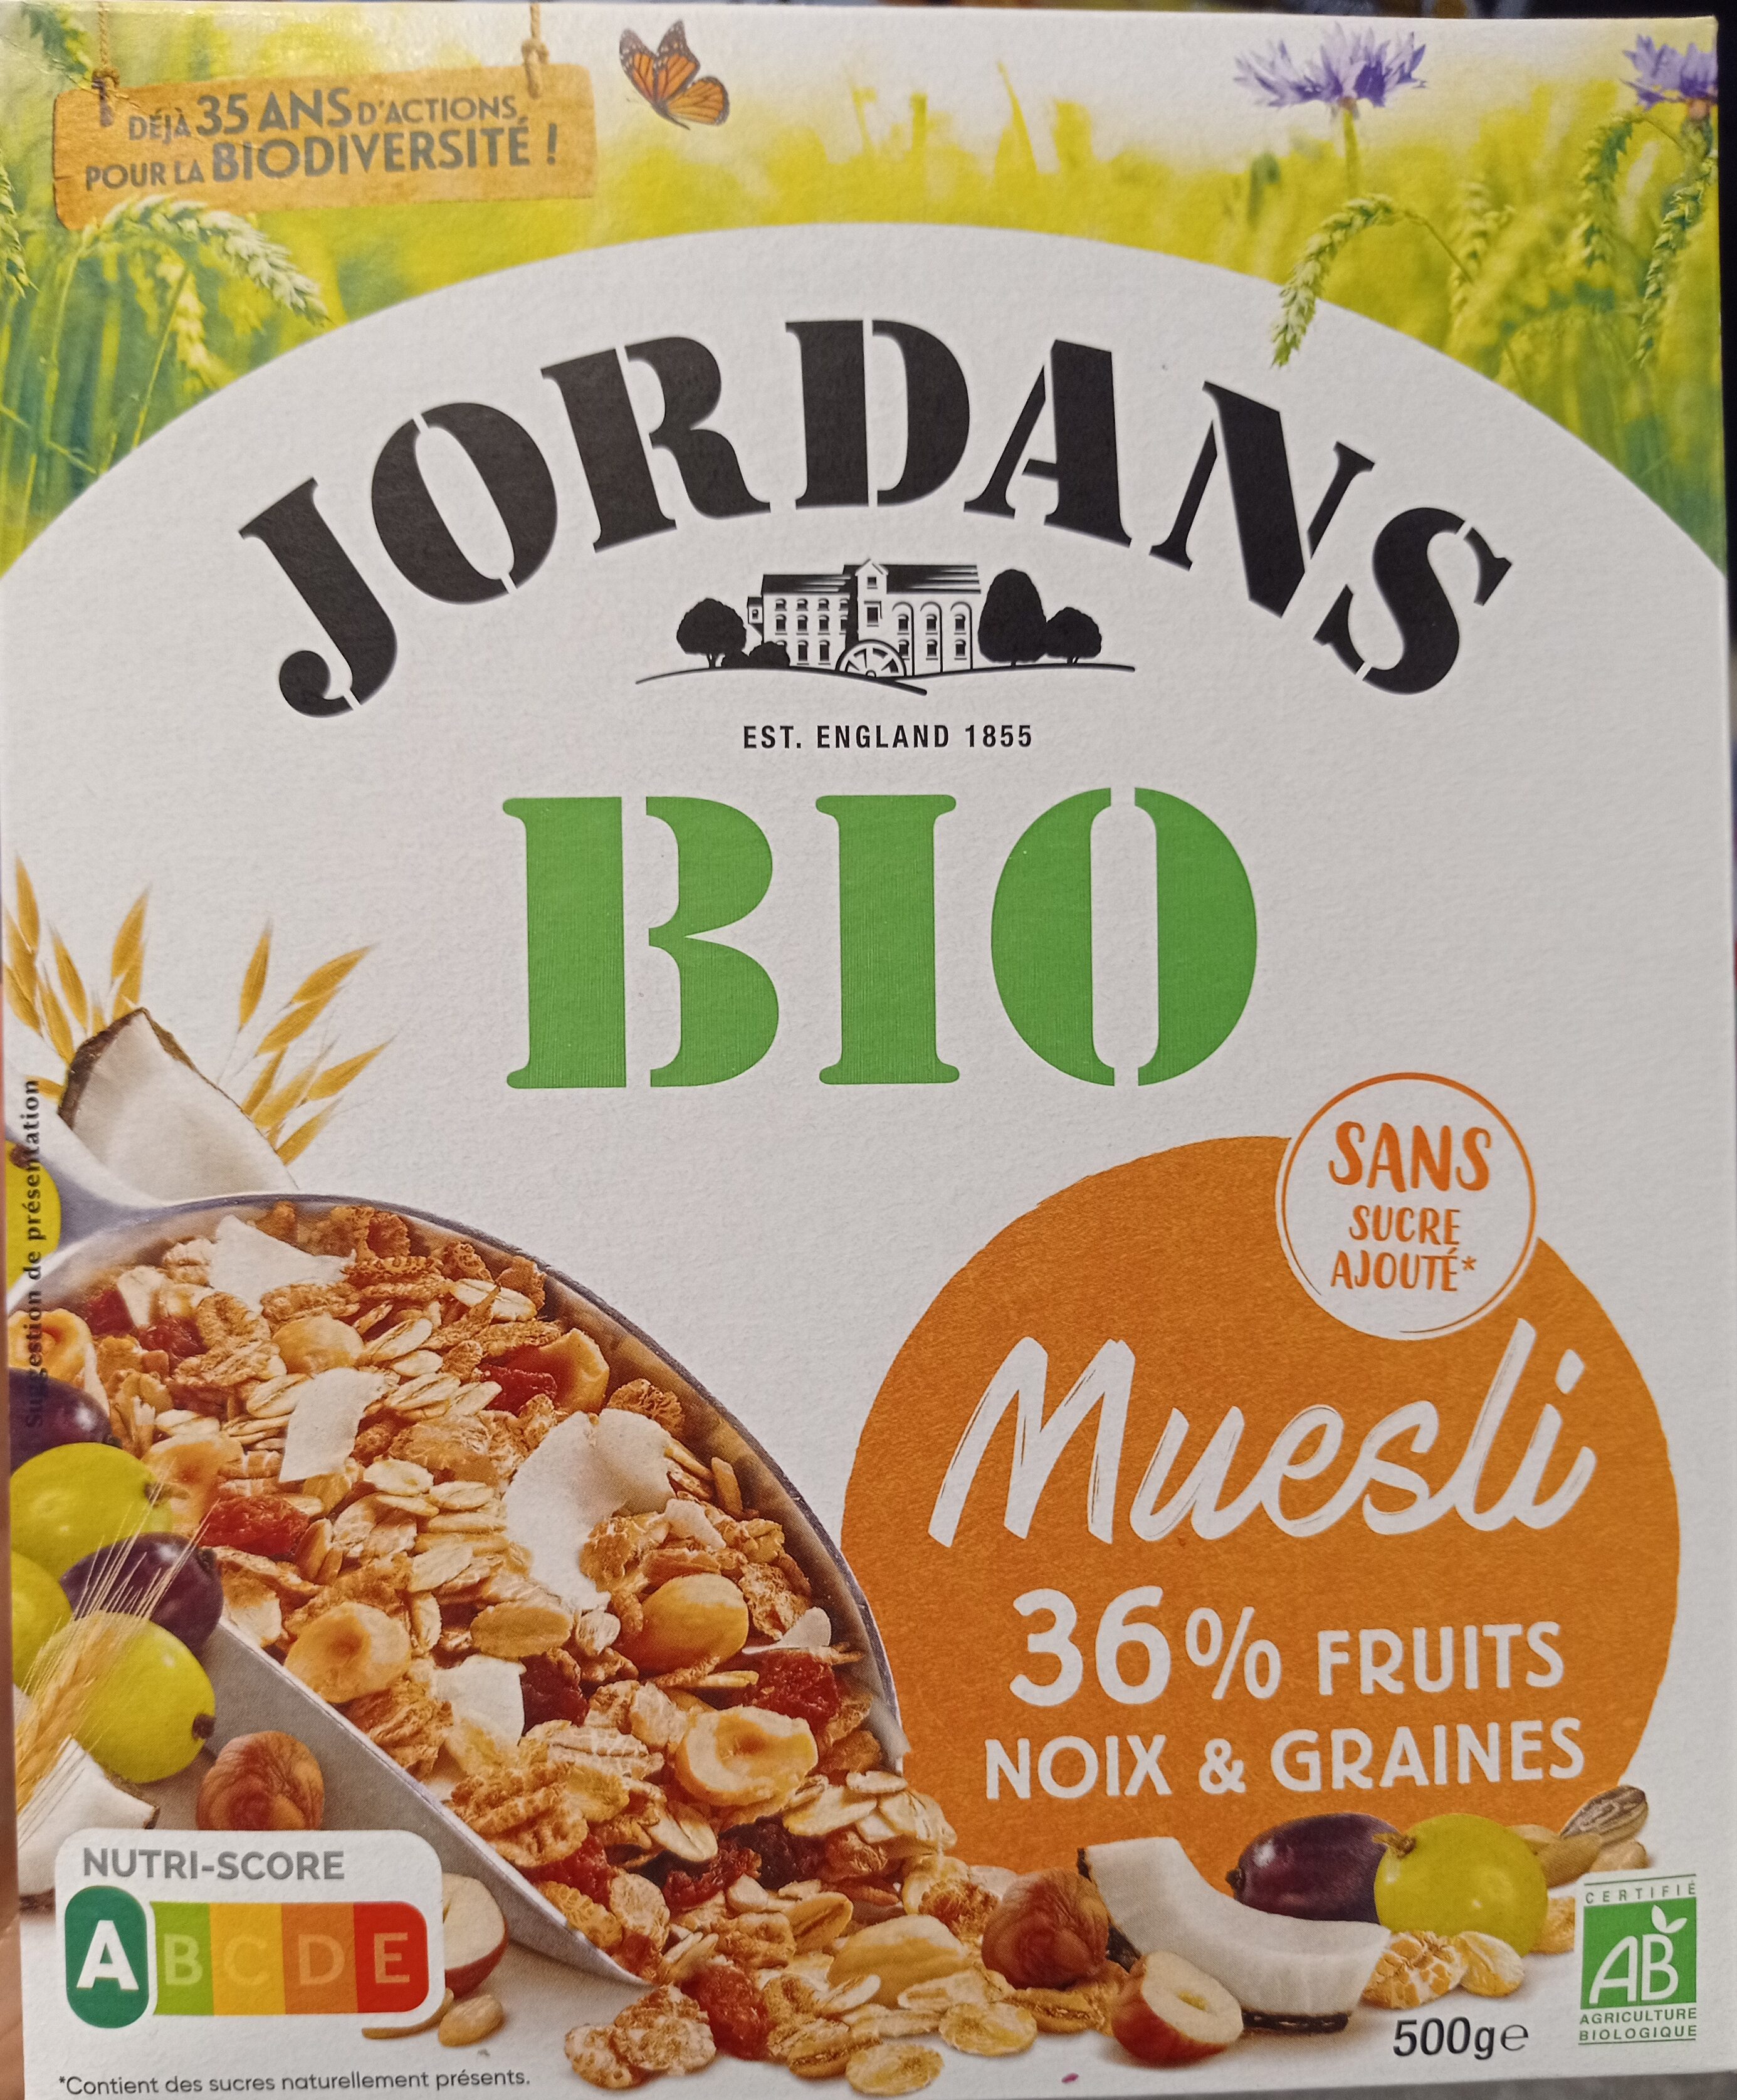 Muesli bio 36% fruits, noix & graines - Product - fr